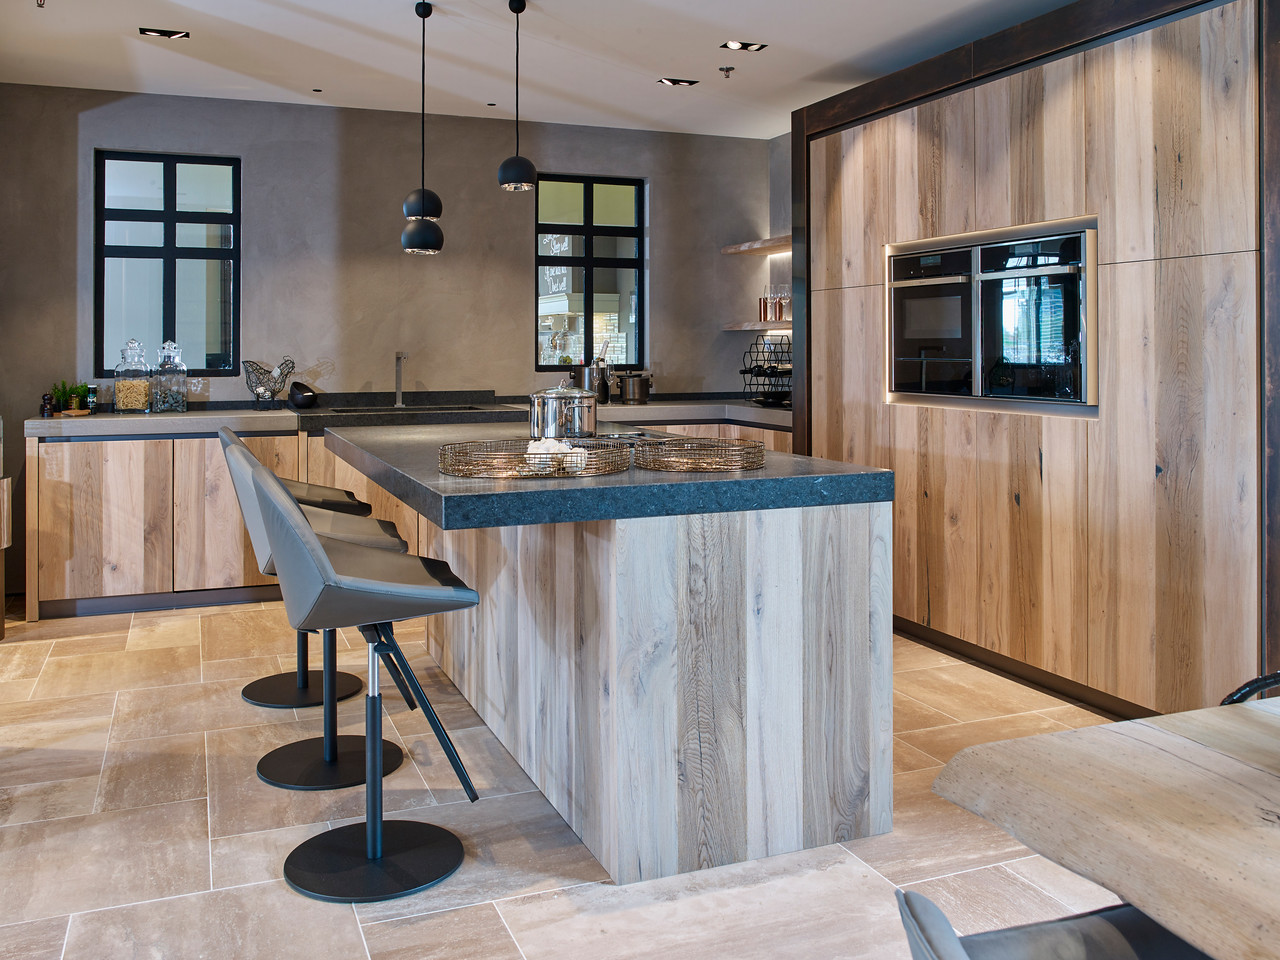 Foto: Studio 92a Tieleman Exclusief Norfolk houten veroudert eiken keuken met koperen stollen  beton en graniet aanrechtblad tieleman keukens 18